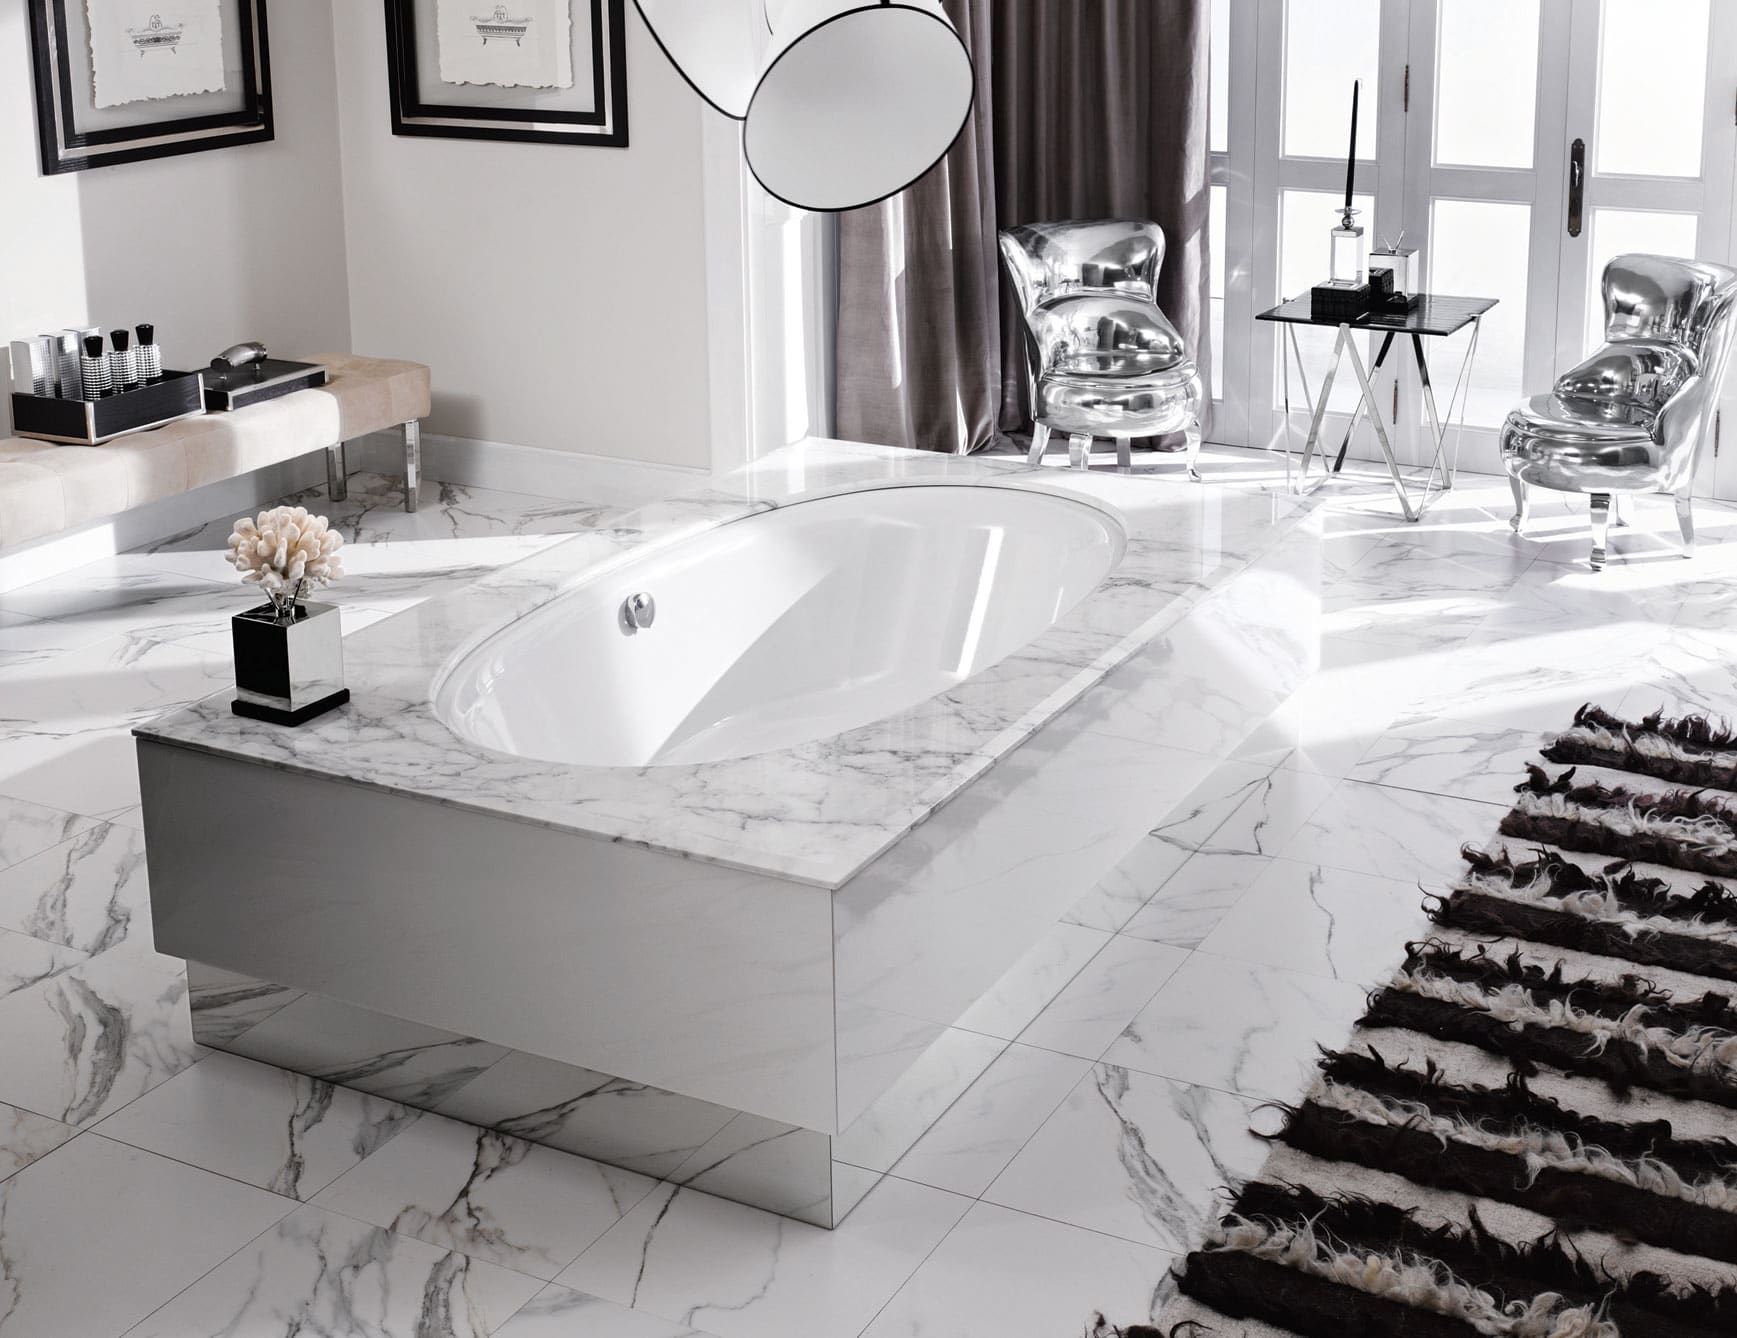 Four Seasons modern Italian bathtub with white Bianco Arebascato marble